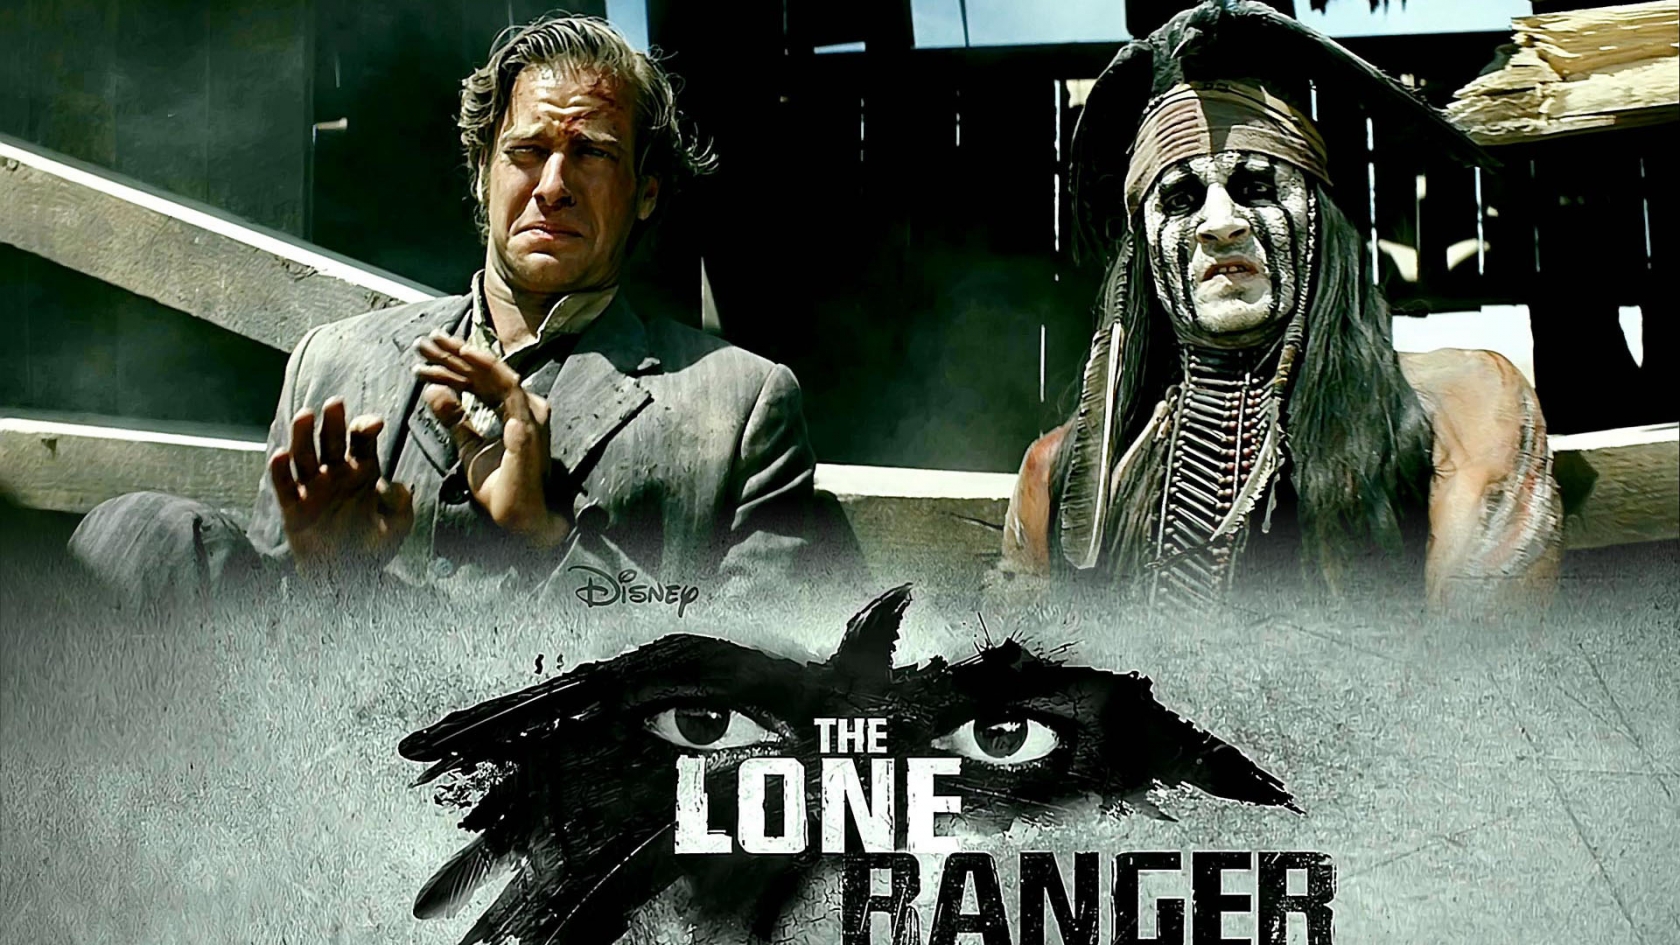 2013 The Lone Ranger for 1680 x 945 HDTV resolution